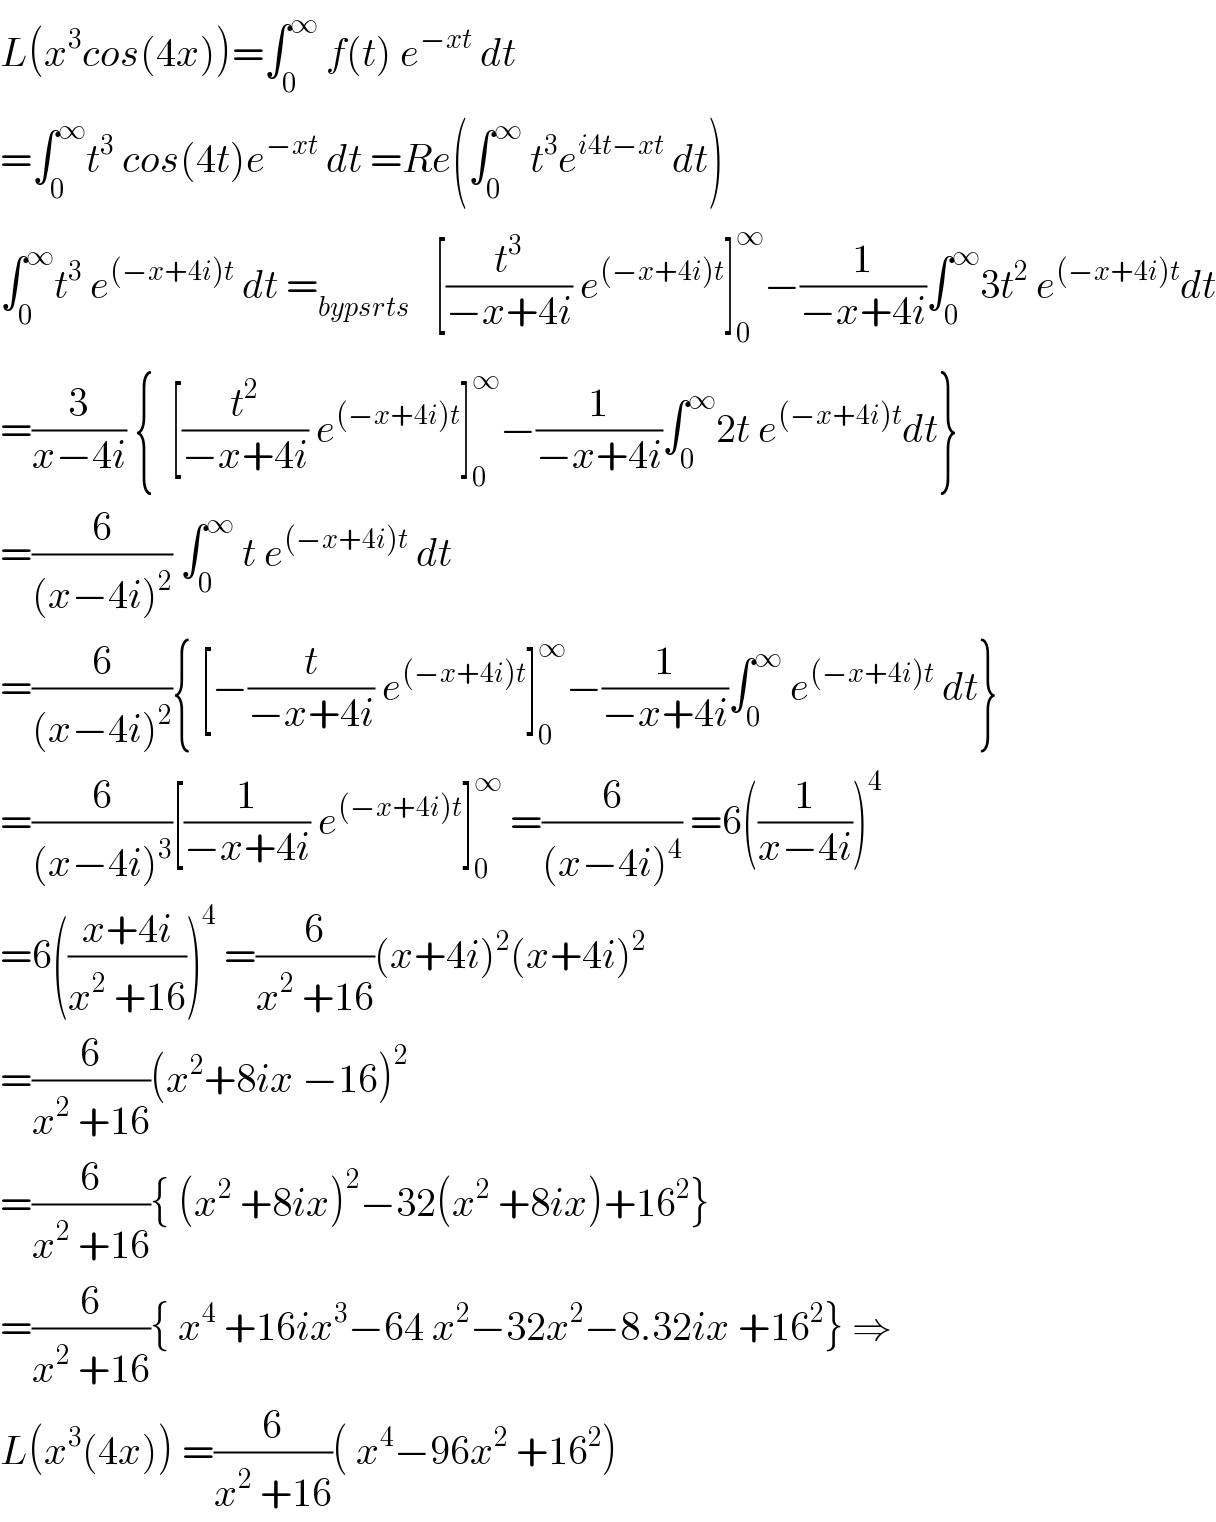 L(x^3 cos(4x))=∫_0 ^∞  f(t) e^(−xt)  dt  =∫_0 ^∞ t^3  cos(4t)e^(−xt)  dt =Re(∫_0 ^∞  t^3 e^(i4t−xt)  dt)  ∫_0 ^∞ t^3  e^((−x+4i)t)  dt =_(bypsrts)    [(t^3 /(−x+4i)) e^((−x+4i)t) ]_0 ^∞ −(1/(−x+4i))∫_0 ^∞ 3t^2  e^((−x+4i)t) dt  =(3/(x−4i)) {  [(t^2 /(−x+4i)) e^((−x+4i)t) ]_0 ^∞ −(1/(−x+4i))∫_0 ^∞ 2t e^((−x+4i)t) dt}  =(6/((x−4i)^2 )) ∫_0 ^∞  t e^((−x+4i)t)  dt   =(6/((x−4i)^2 )){ [−(t/(−x+4i)) e^((−x+4i)t) ]_0 ^∞ −(1/(−x+4i))∫_0 ^∞  e^((−x+4i)t)  dt}  =(6/((x−4i)^3 ))[(1/(−x+4i)) e^((−x+4i)t) ]_0 ^∞  =(6/((x−4i)^4 )) =6((1/(x−4i)))^4   =6(((x+4i)/(x^2  +16)))^4  =(6/(x^2  +16))(x+4i)^2 (x+4i)^2   =(6/(x^2  +16))(x^2 +8ix −16)^2   =(6/(x^2  +16)){ (x^2  +8ix)^2 −32(x^2  +8ix)+16^2 }  =(6/(x^2  +16)){ x^4  +16ix^3 −64 x^2 −32x^2 −8.32ix +16^2 } ⇒  L(x^3 (4x)) =(6/(x^2  +16))( x^4 −96x^2  +16^2 )  